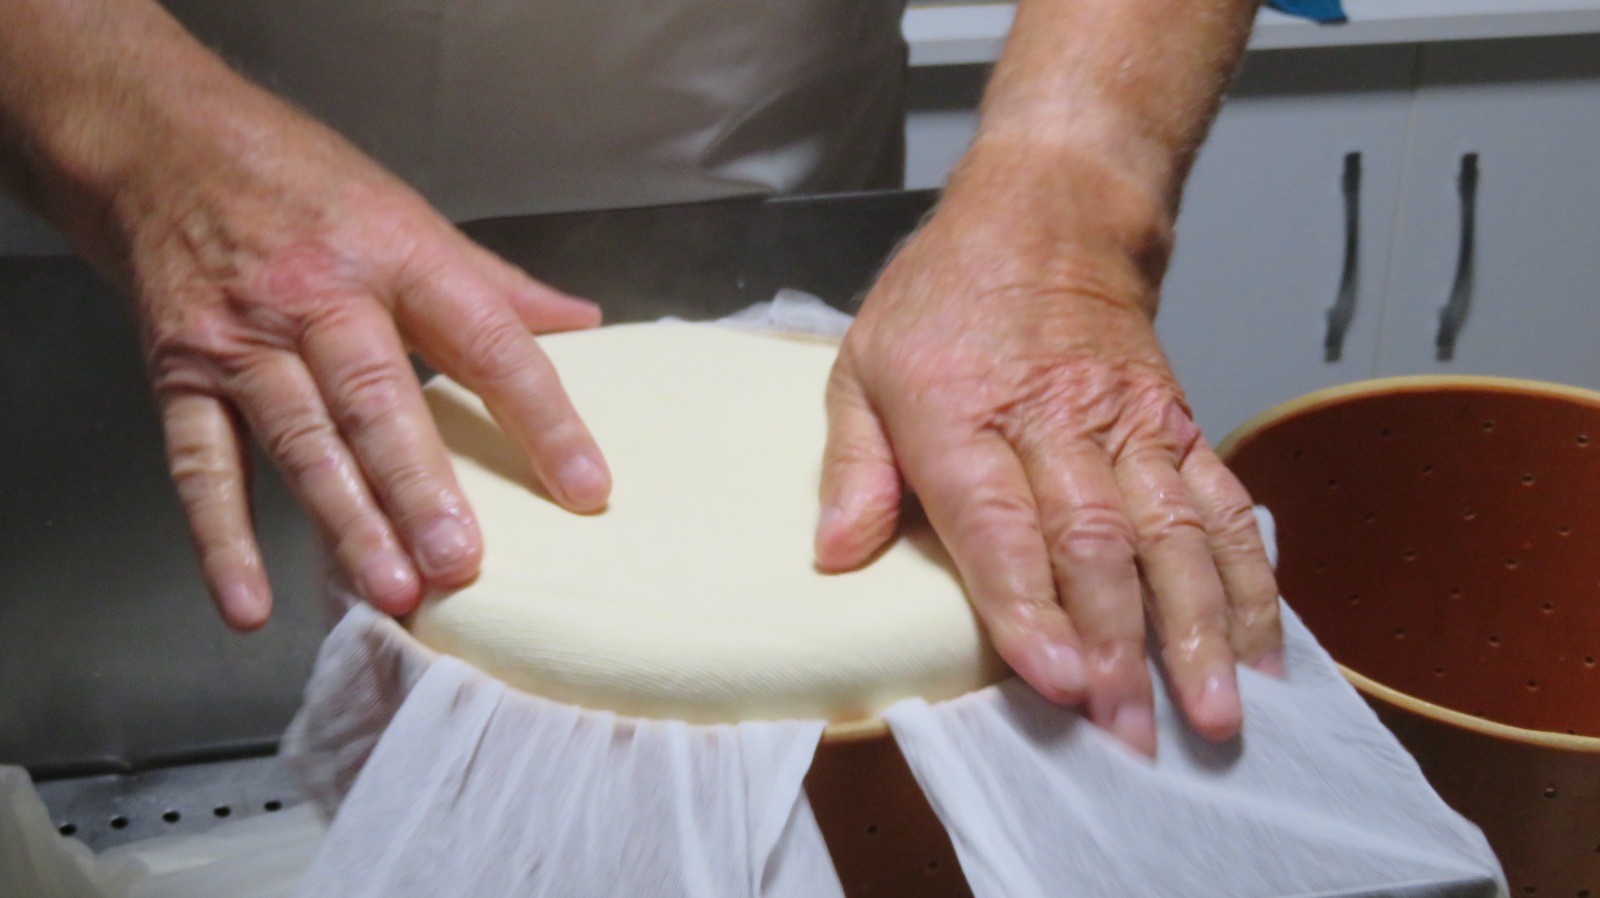 We visit the artisan cheesemaker Zoltán Horváth, a native of Székelykeresztúr